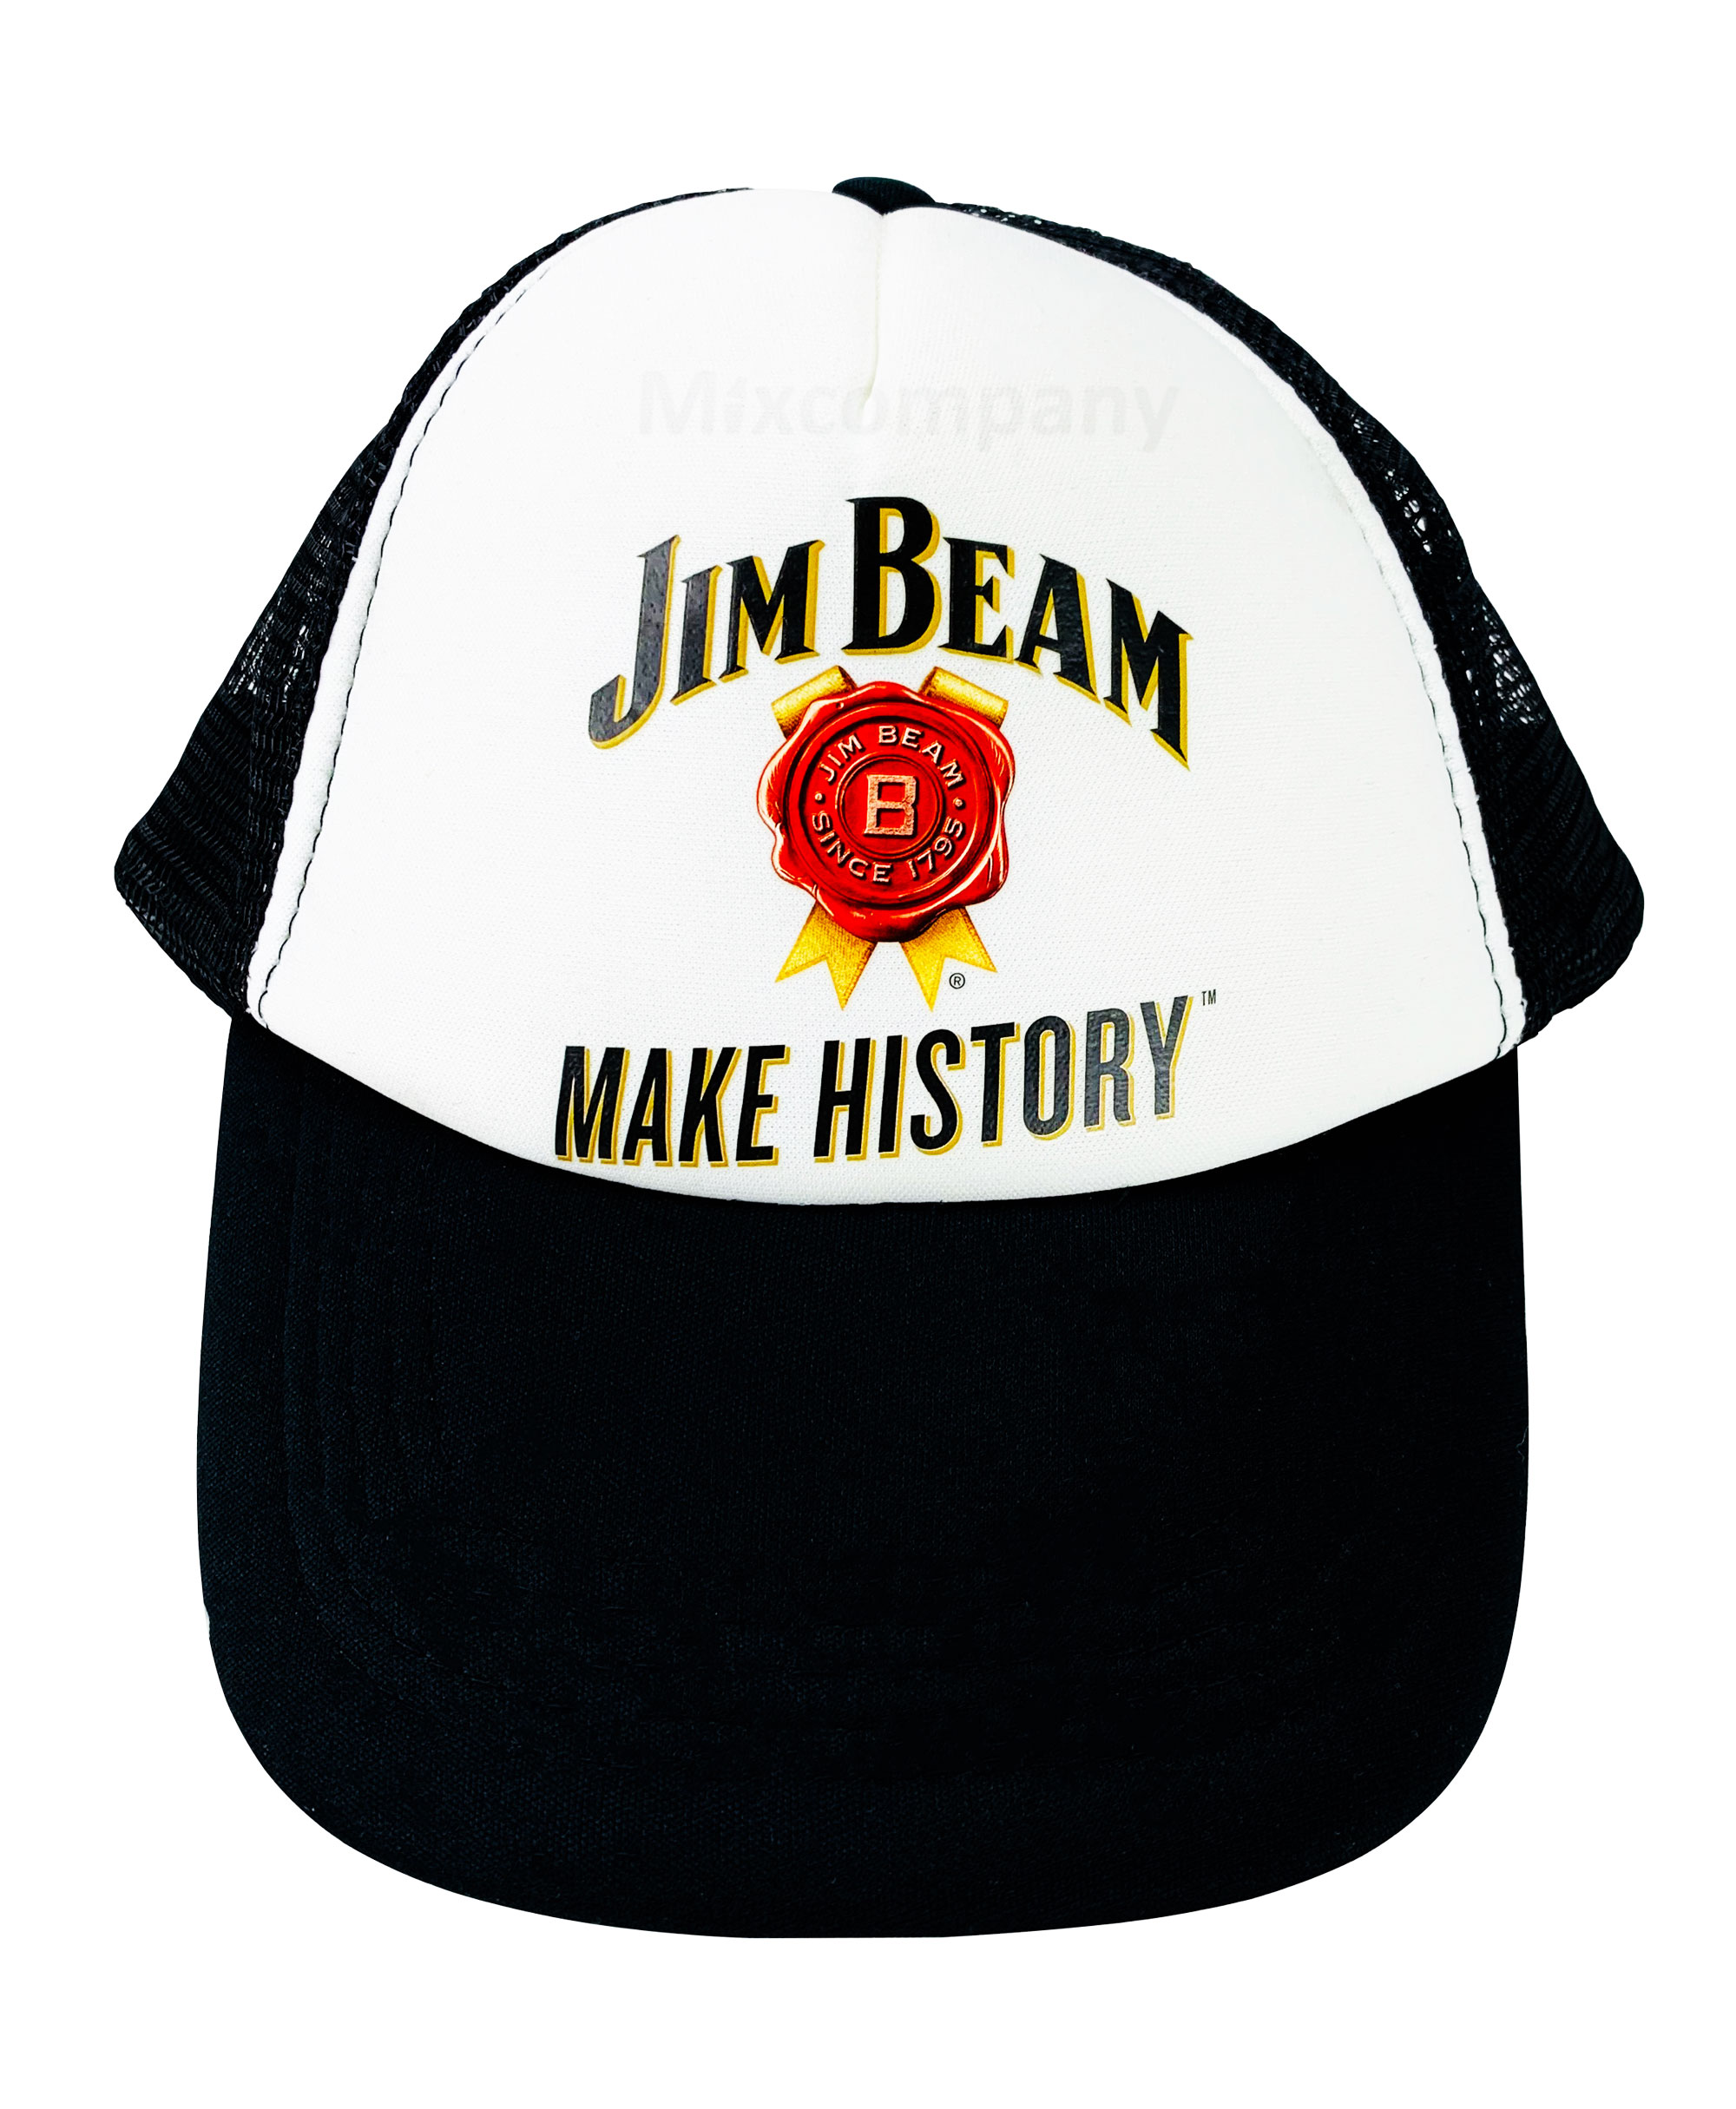 3x Jim Beam Make History 3er Kappe Basecap Cap Mütze whisky whiskey Party Festival Karneval